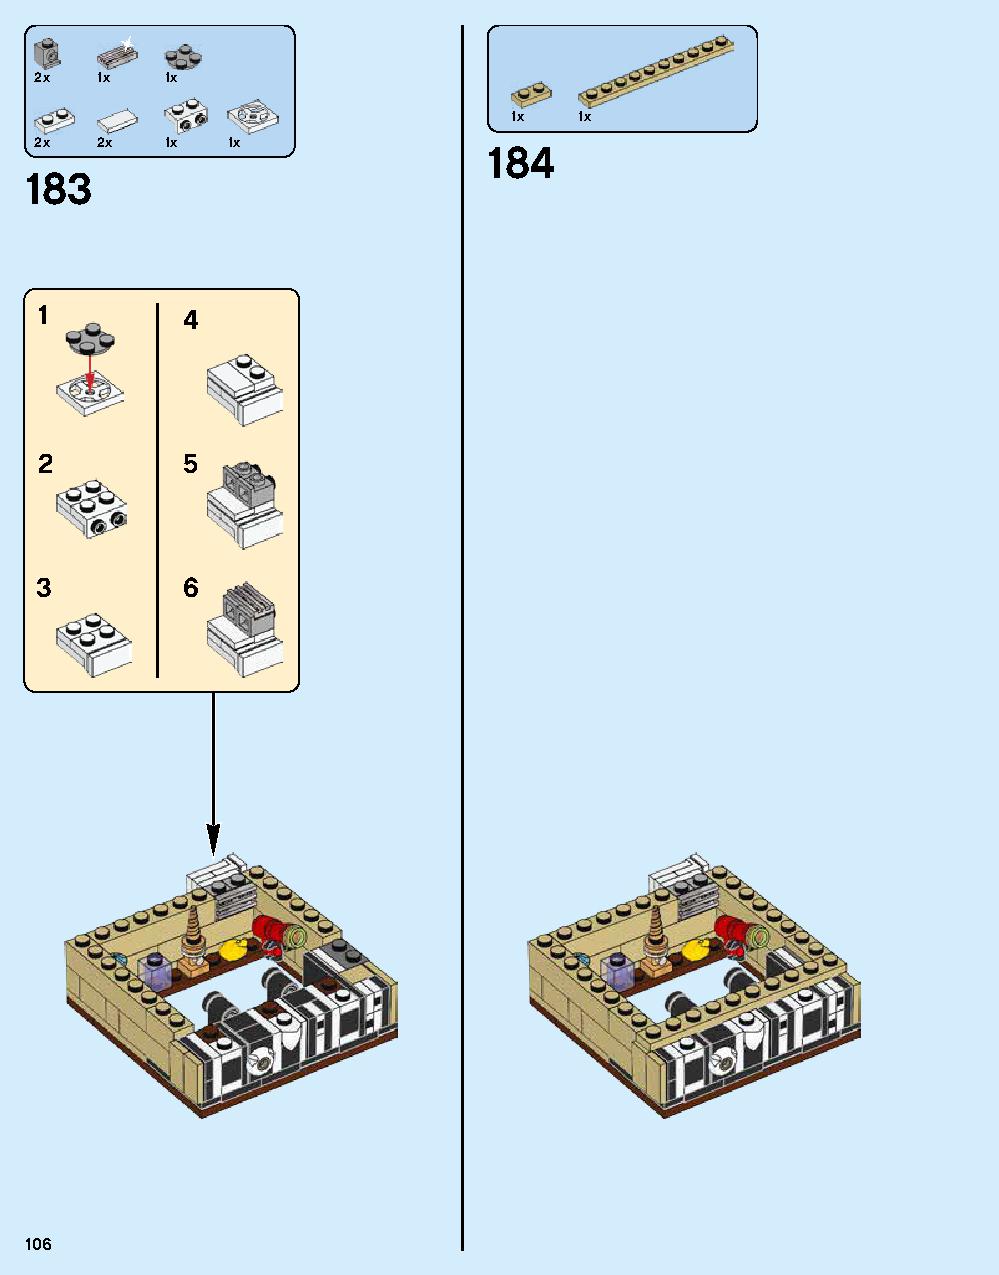 ニンジャゴー シティ 70620 レゴの商品情報 レゴの説明書・組立方法 106 page